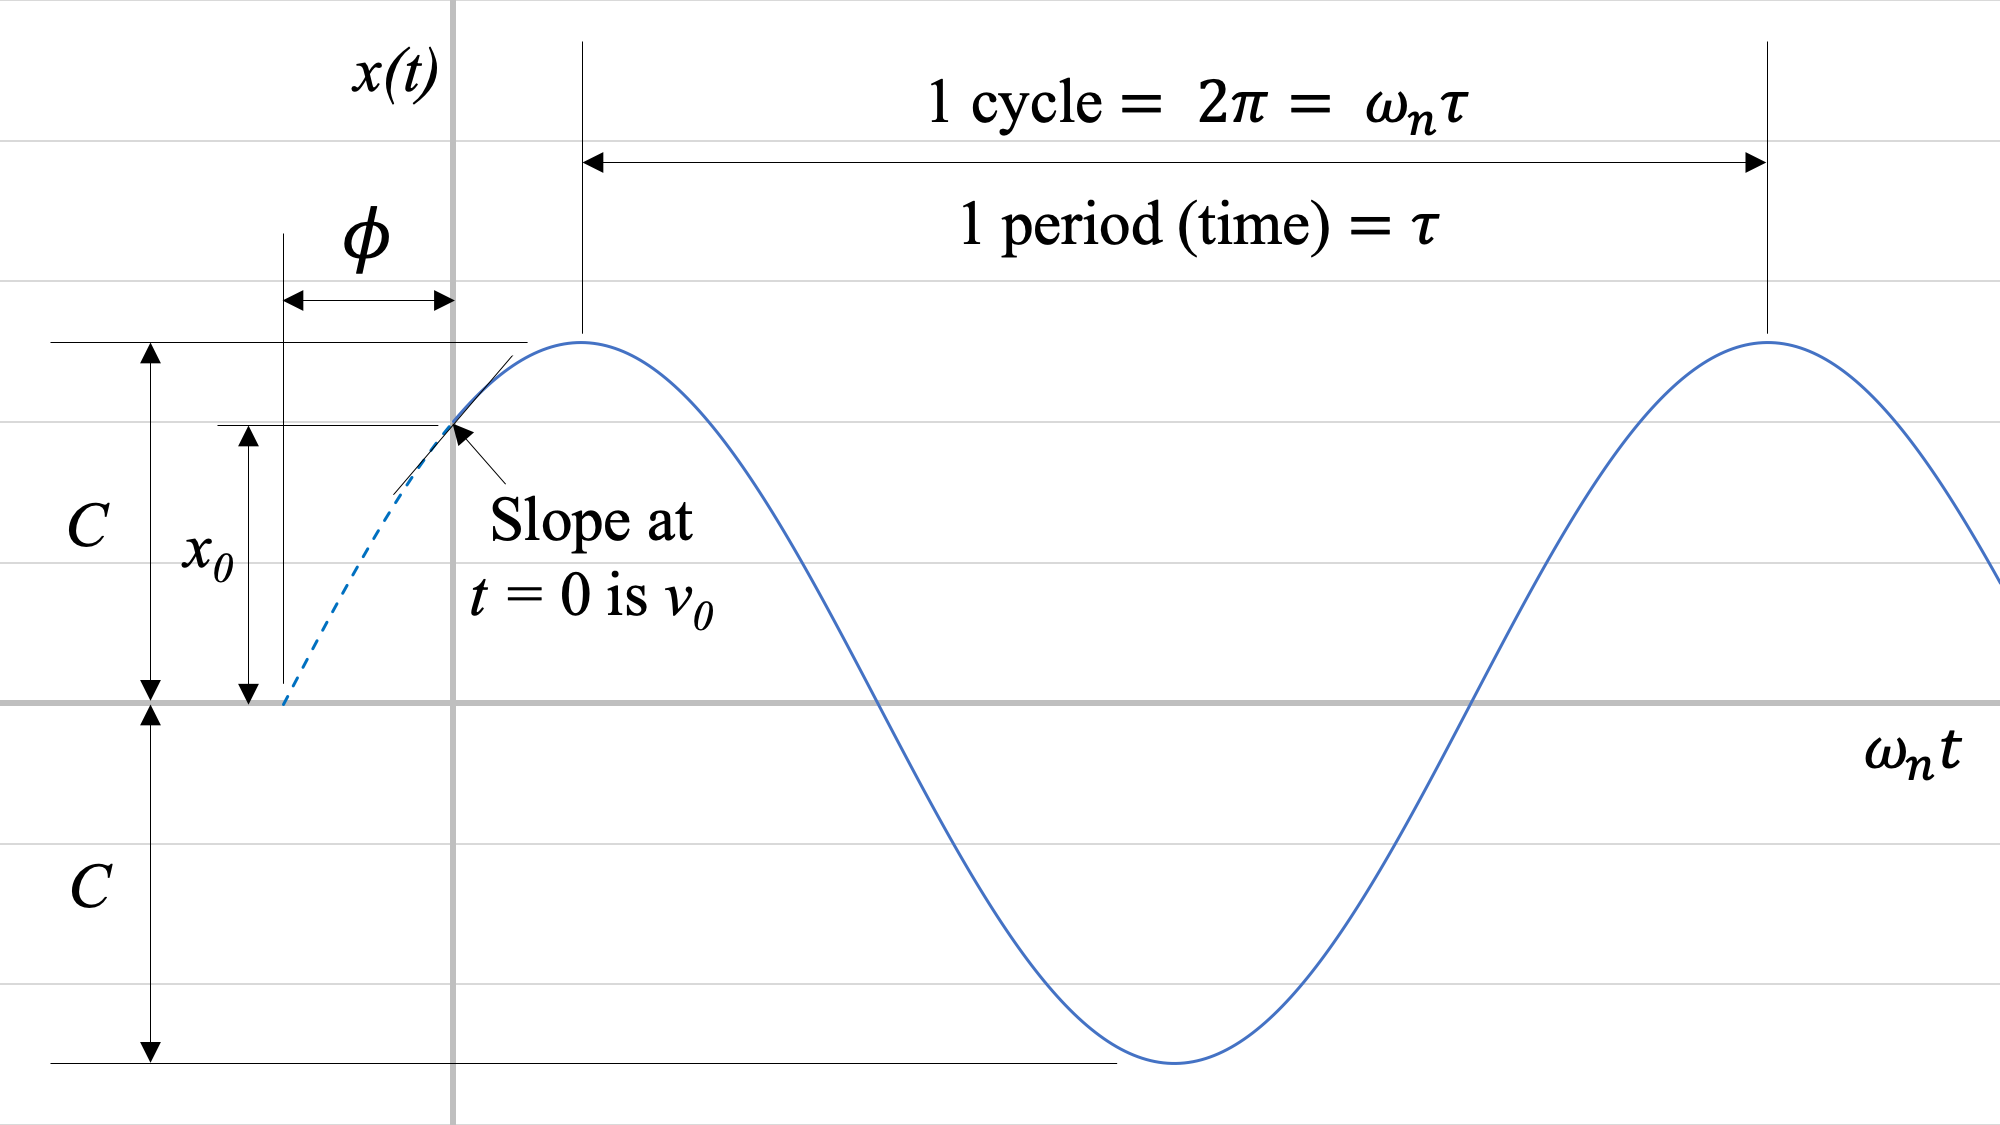 Gráfica de una función sinusoidal sobre un eje horizontal de omega_n t y un eje vertical de x (t), comenzando en t=0. La gráfica sinusoidal se ha desplazado ligeramente hacia la izquierda, por lo que existe una distancia de phi entre el eje vertical y la intersección más cercana del eje horizontal con la gráfica proyectada a la izquierda de t=0. C es la amplitud, o la distancia entre el eje horizontal y los puntos más altos o más bajos de la función sinusoidal; la pendiente de la gráfica en t=0 es v_0; y hay un ciclo de 2 unidades pi, o omega_n * tau donde tau es el periodo, entre dos máximos o mínimos adyacentes de la gráfica.